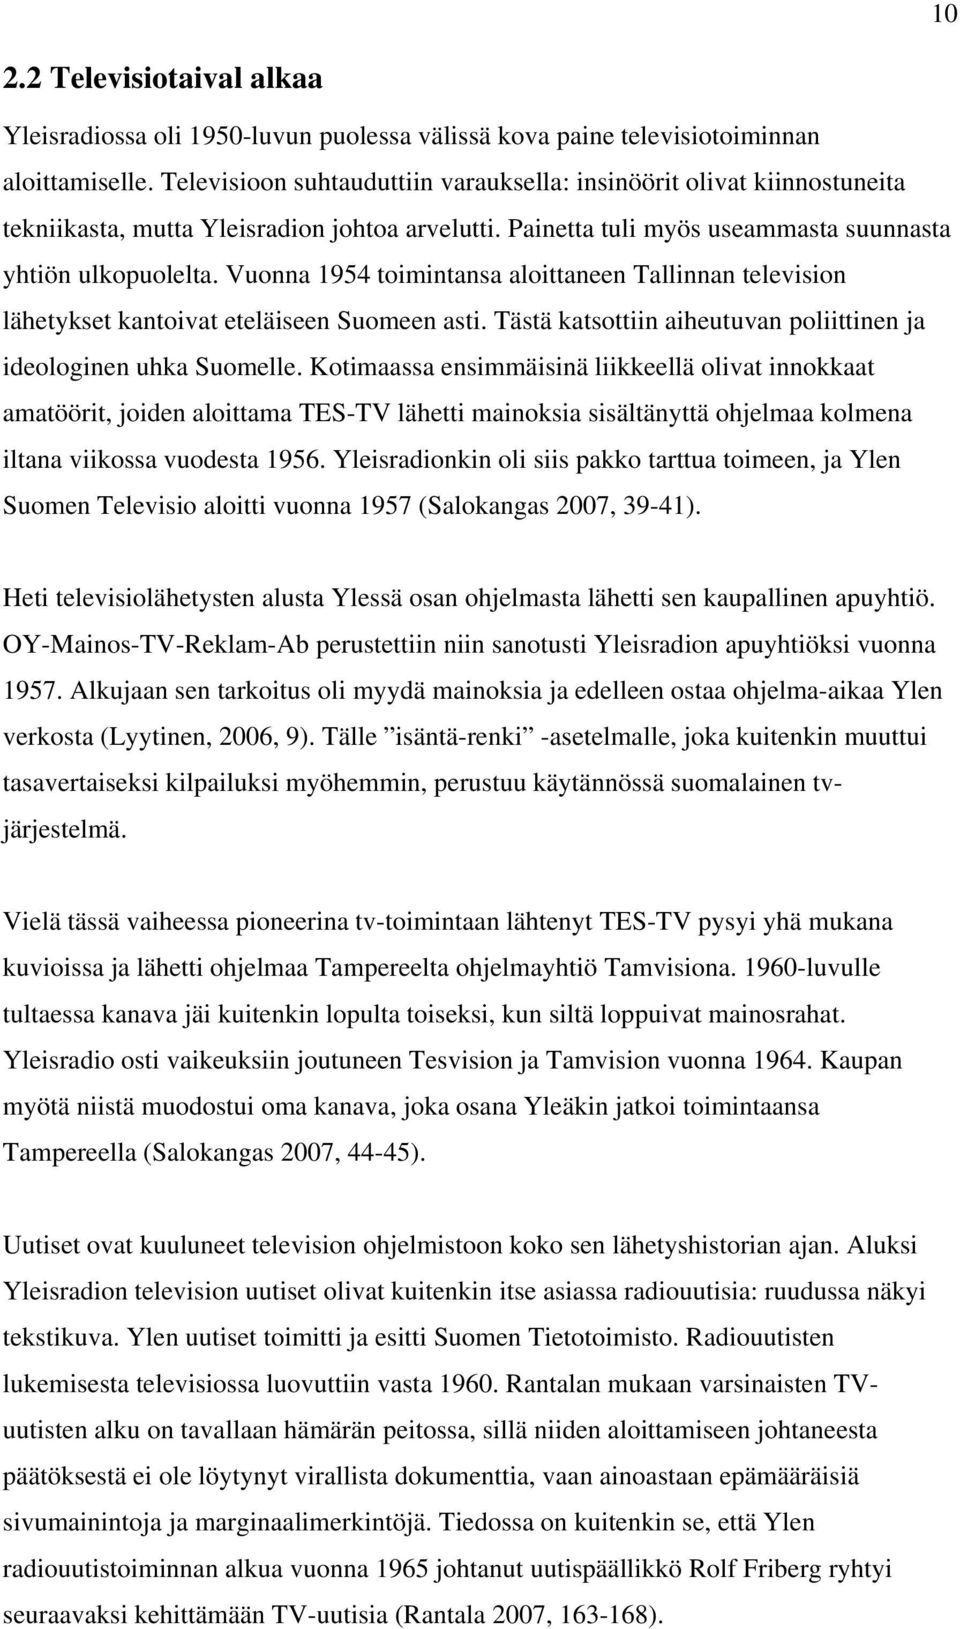 Vuonna 1954 toimintansa aloittaneen Tallinnan television lähetykset kantoivat eteläiseen Suomeen asti. Tästä katsottiin aiheutuvan poliittinen ja ideologinen uhka Suomelle.